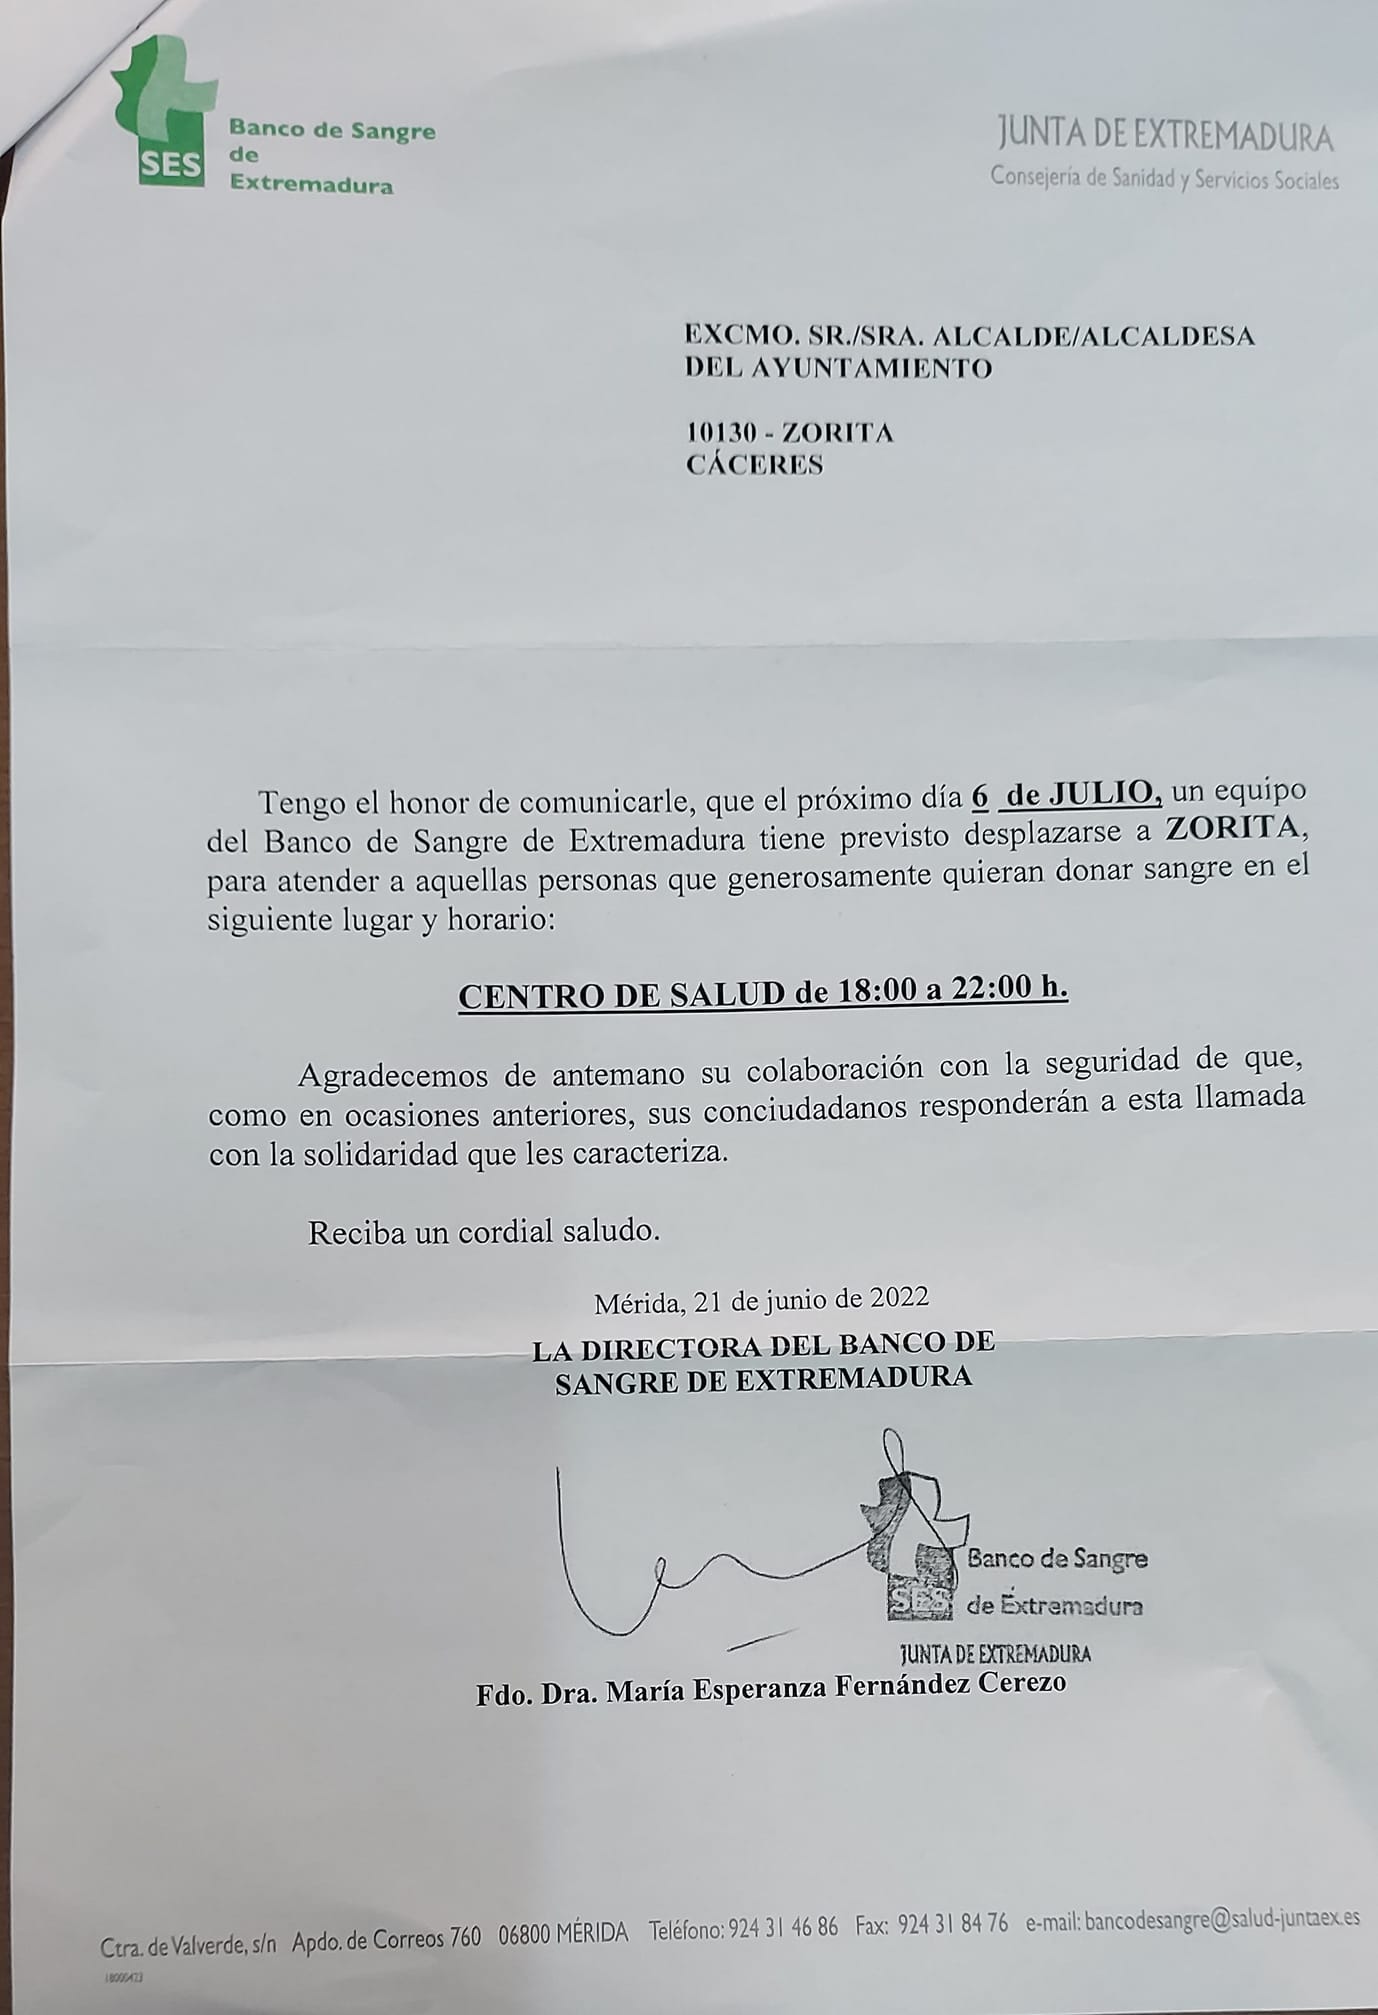 Donación de sangre (julio 2022) - Zorita (Cáceres)